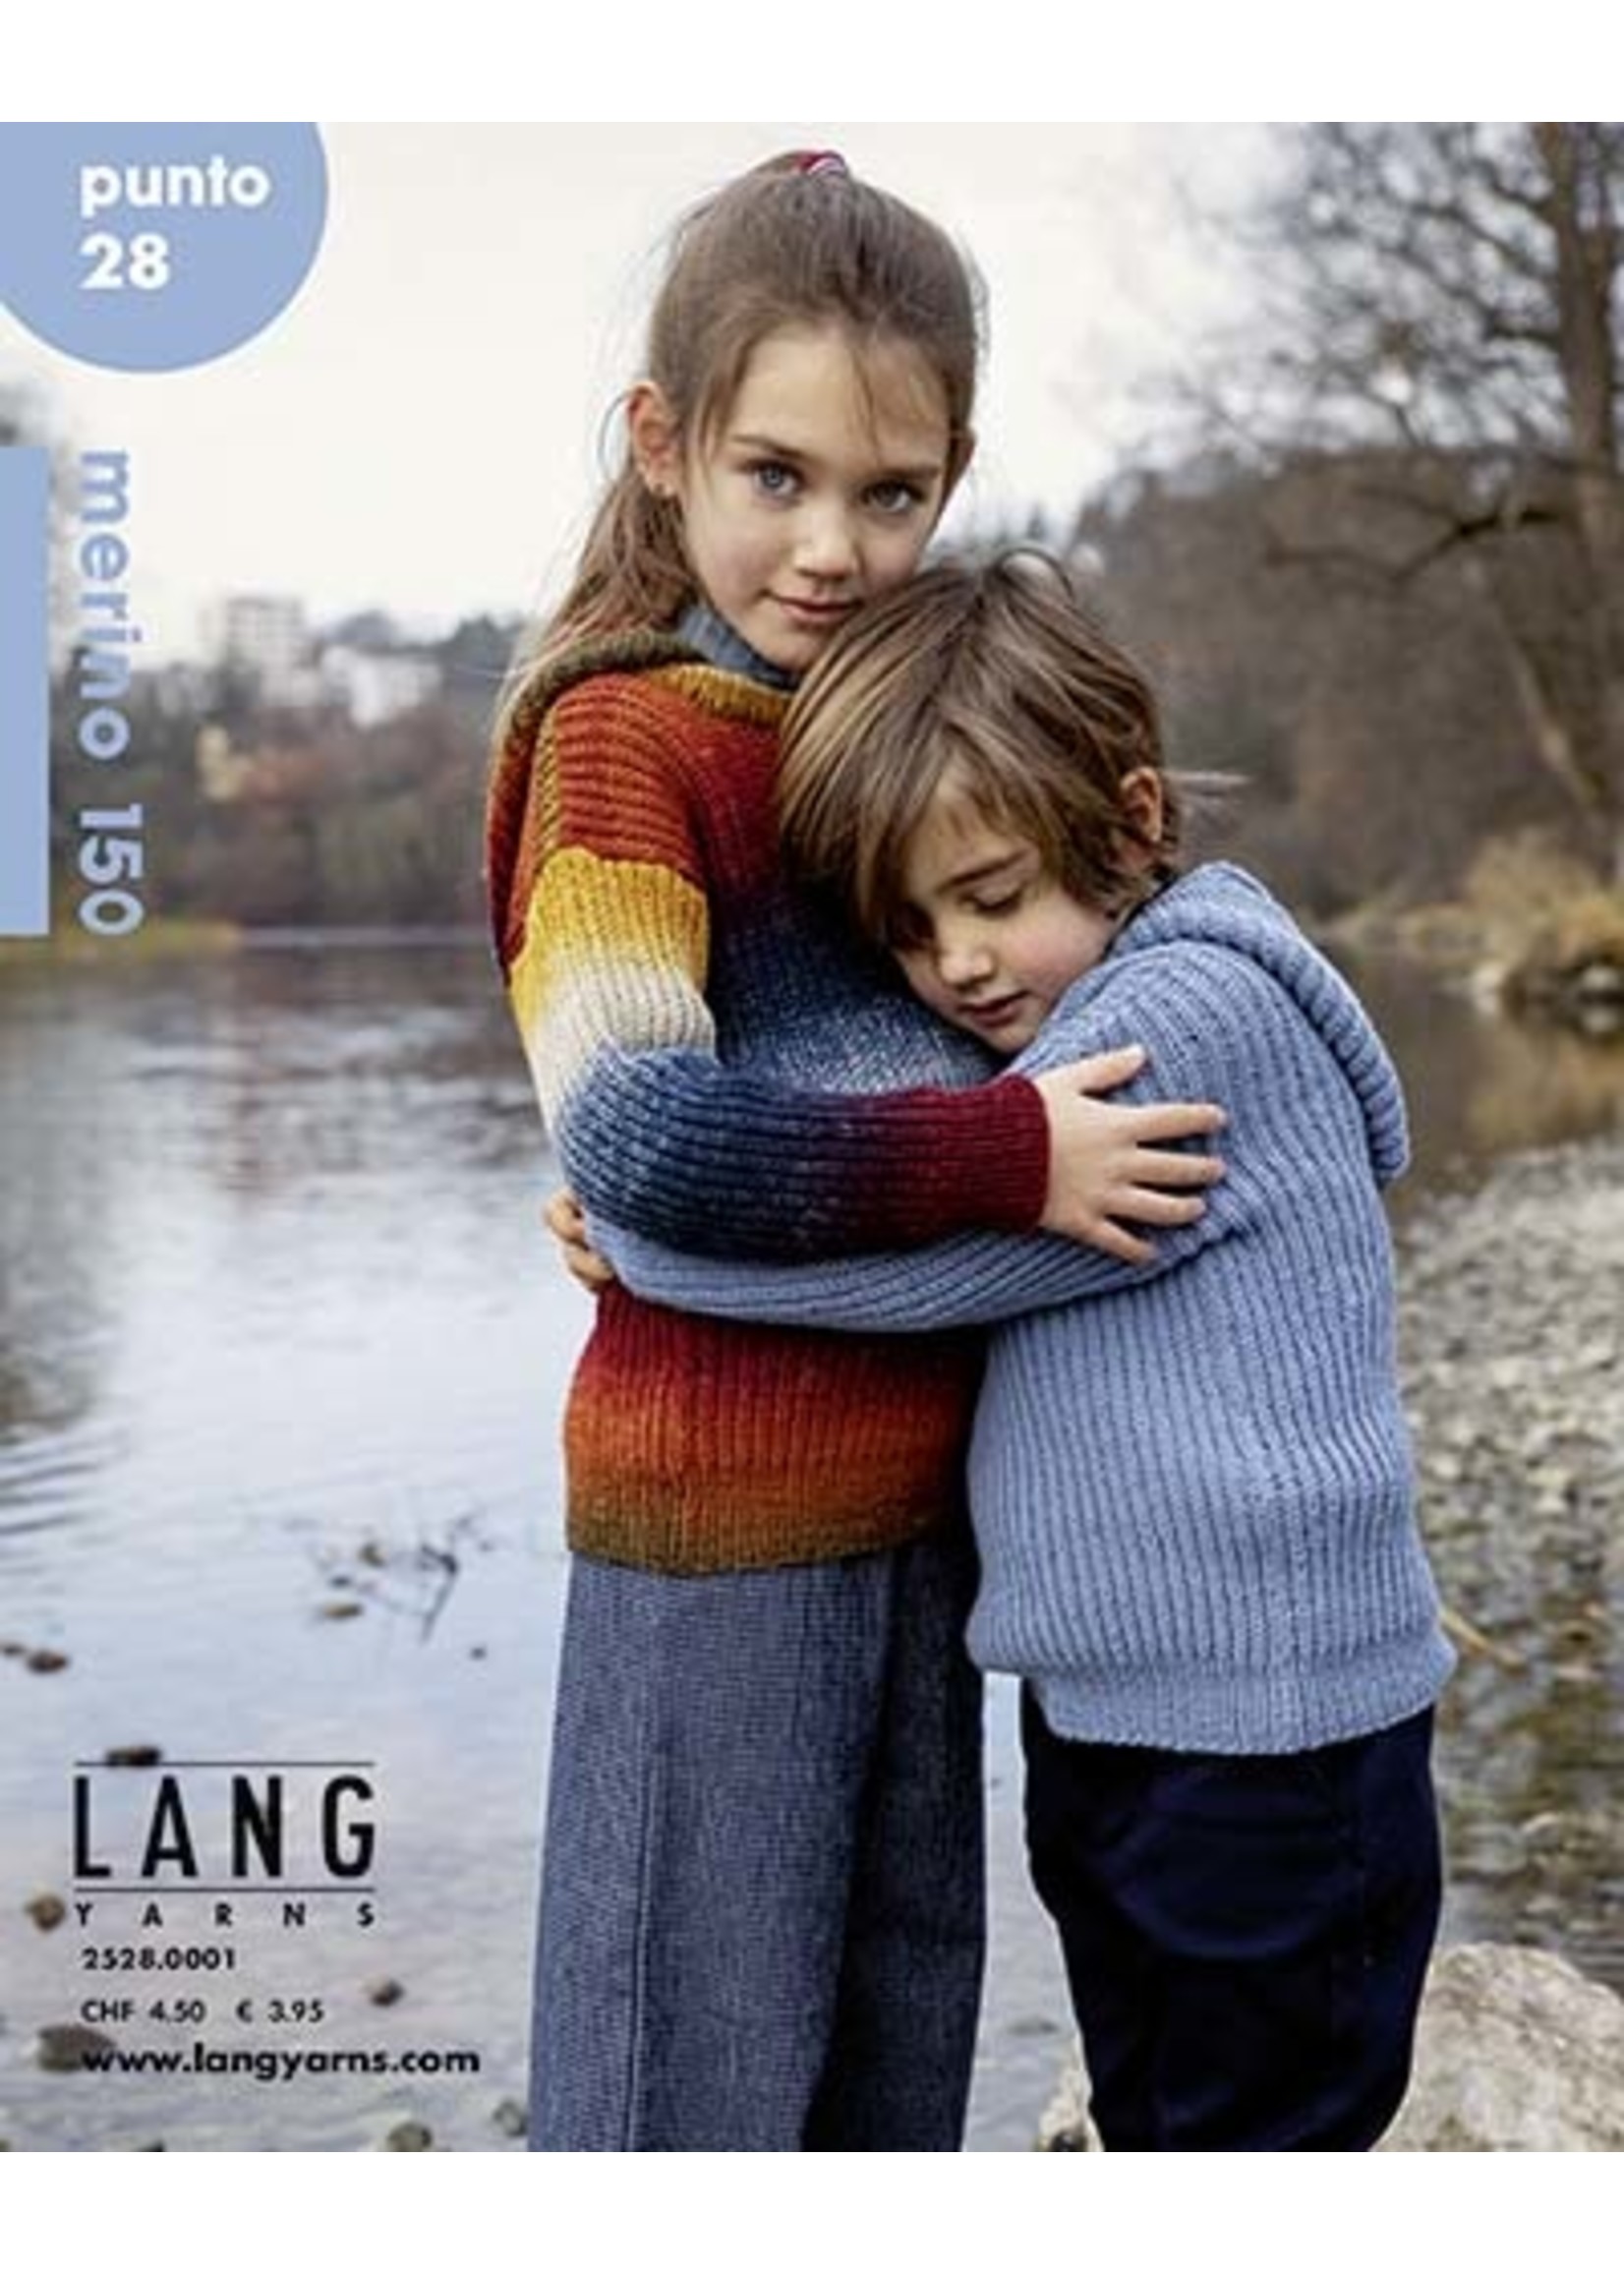 Lang Lang - Merino 150